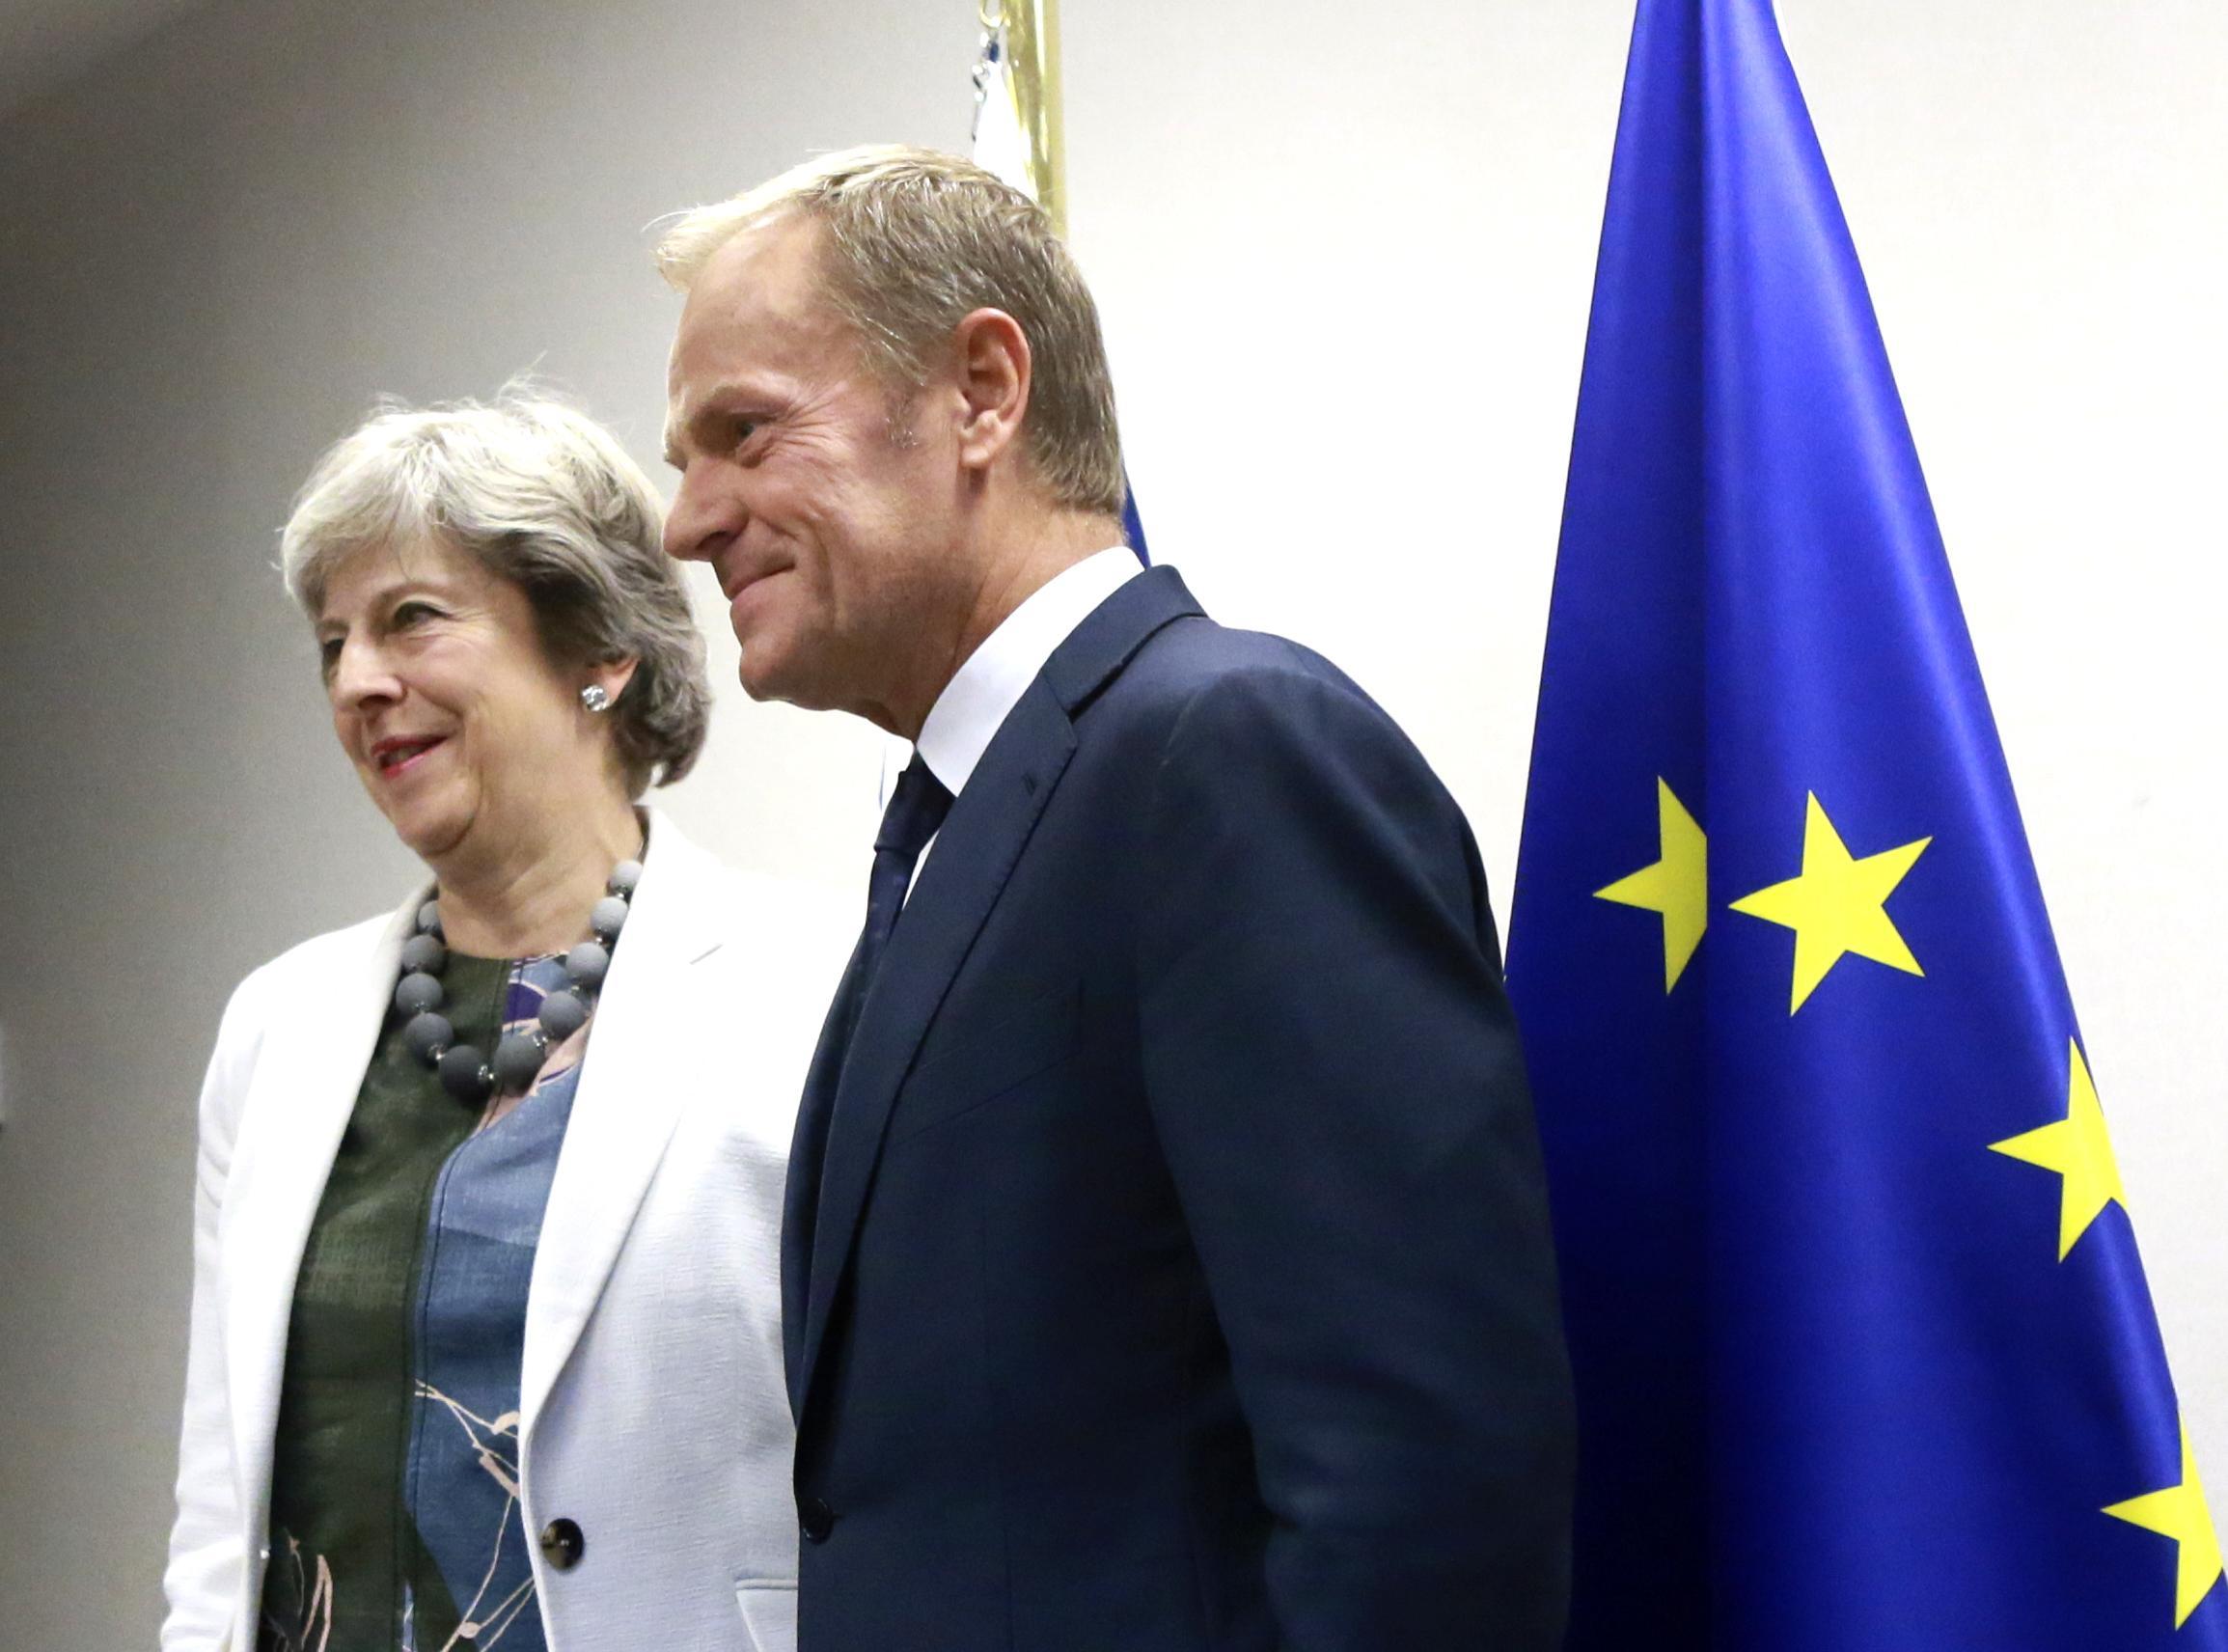 Theresa May and European council president Donald Tusk at a previous meeting